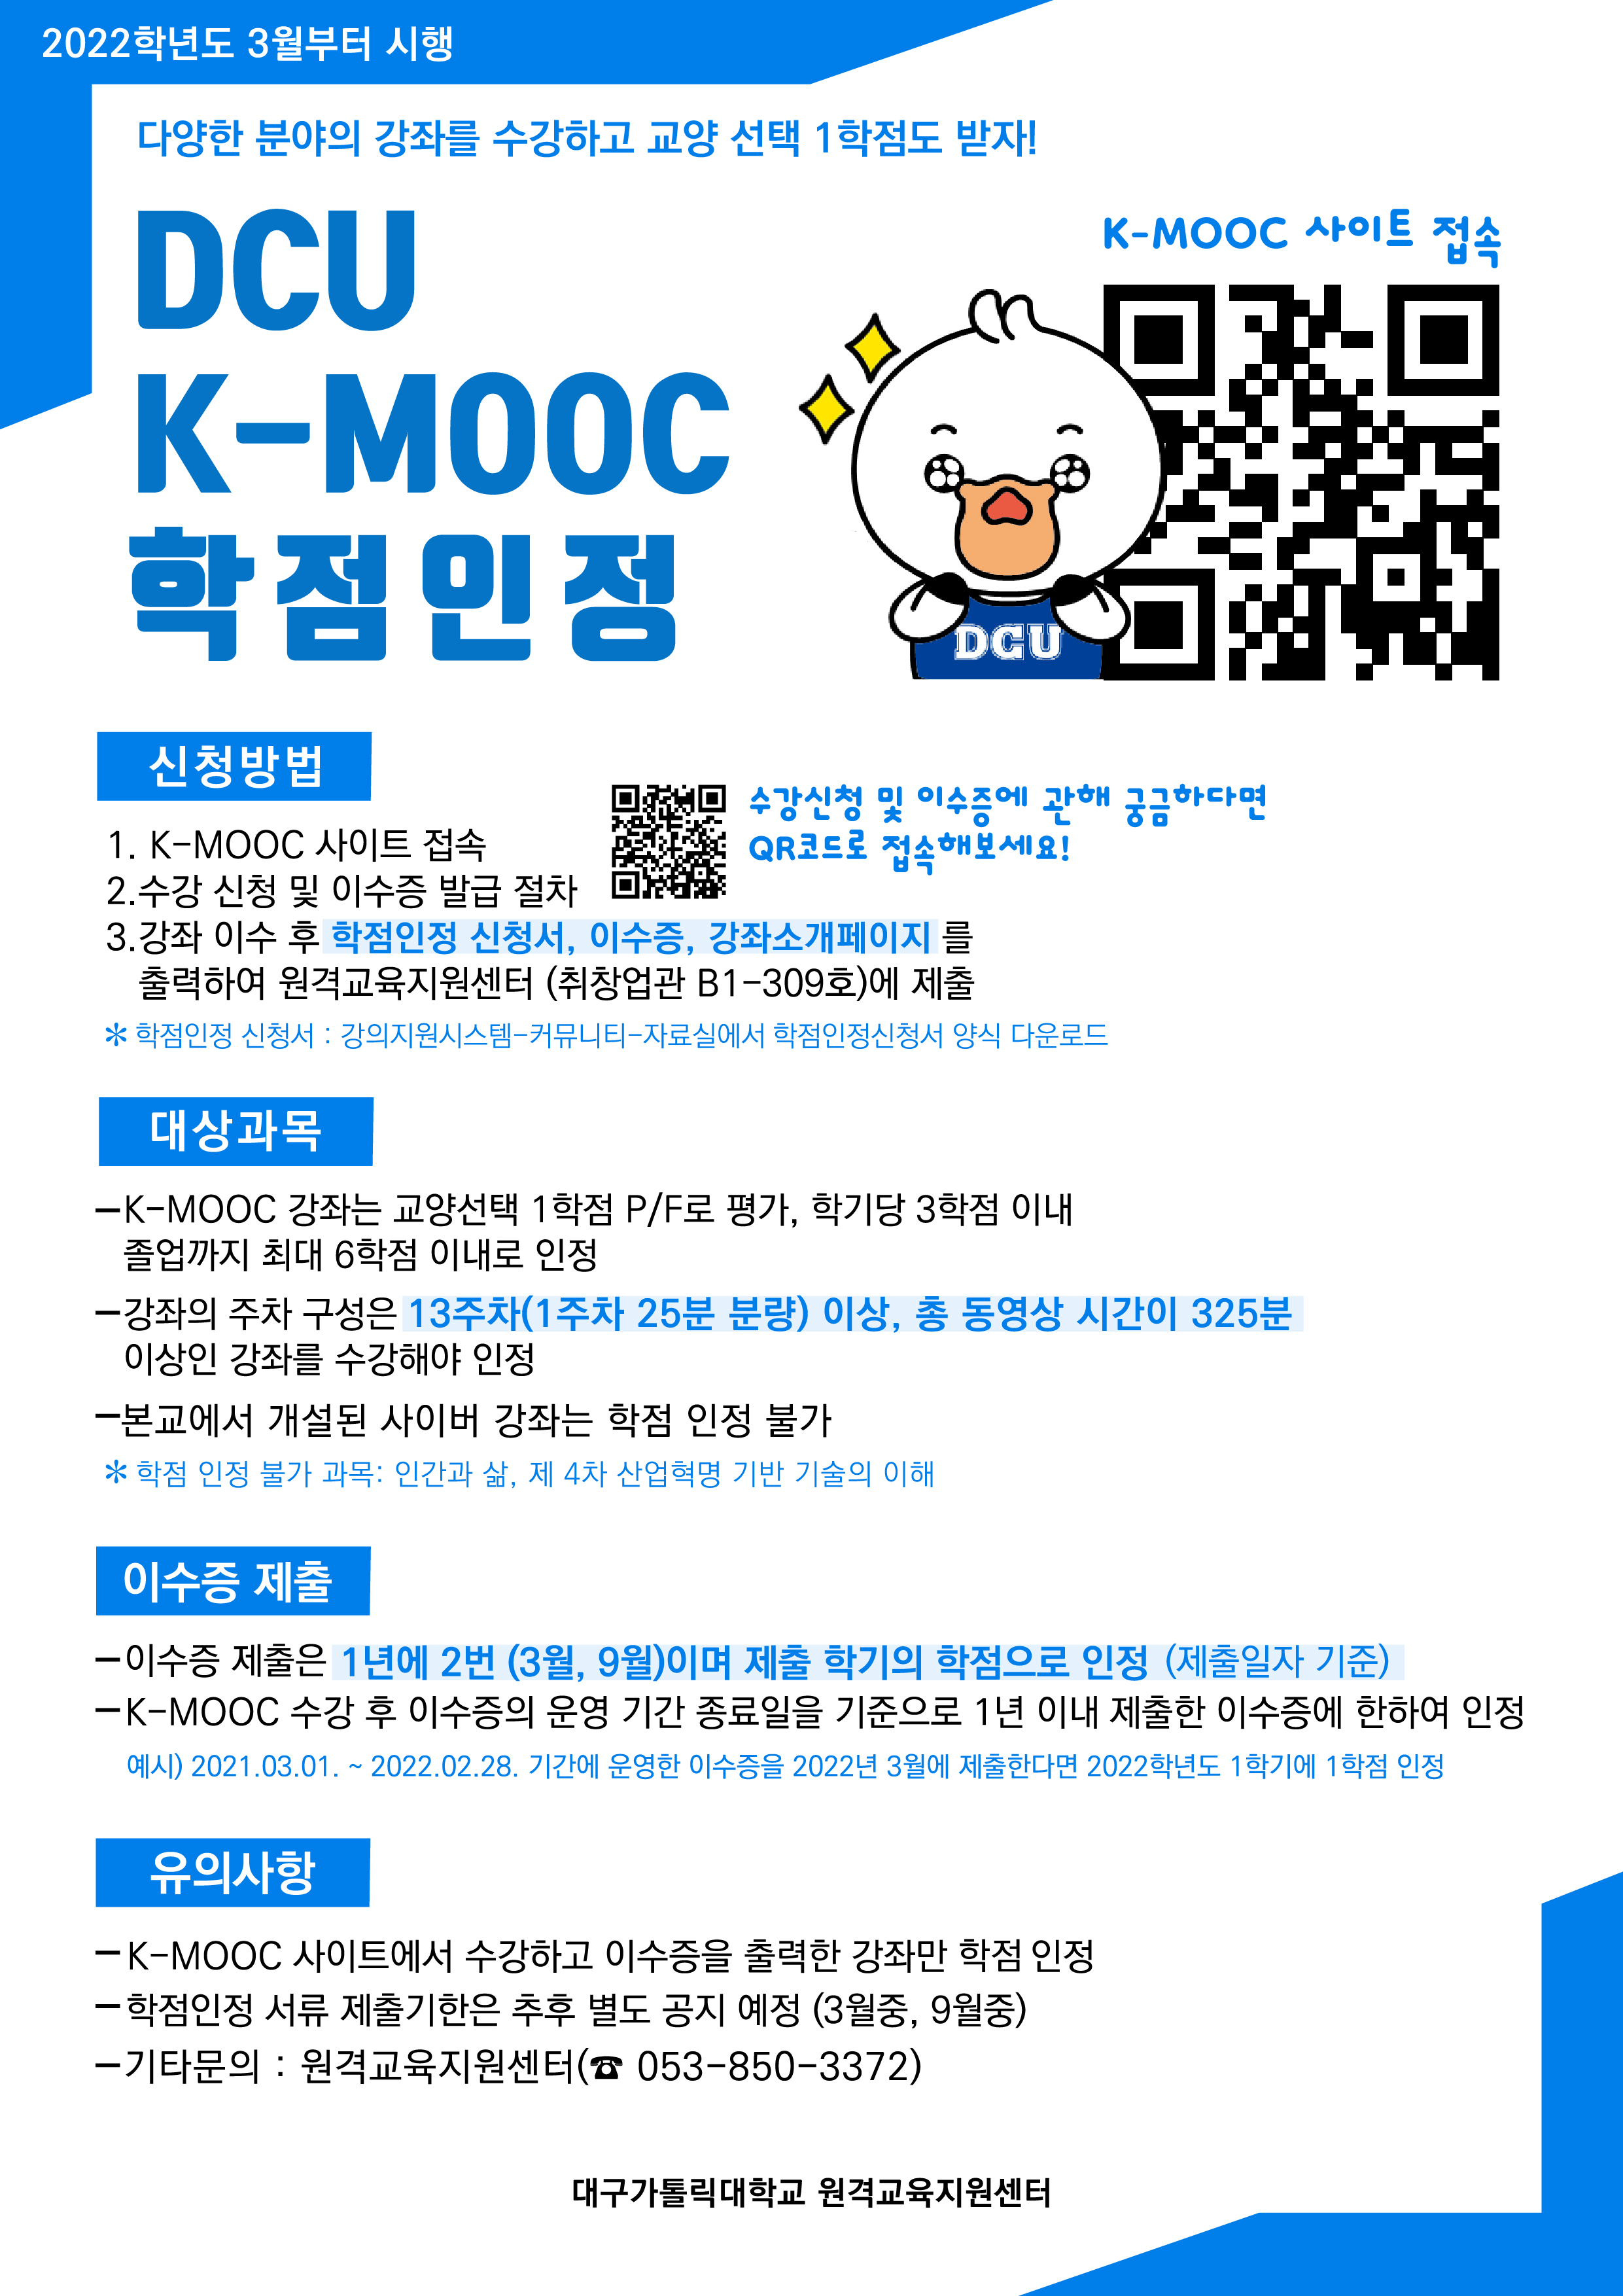 사본 -2022학년도 DCU K-MOOC 학점인정 포스터.jpg